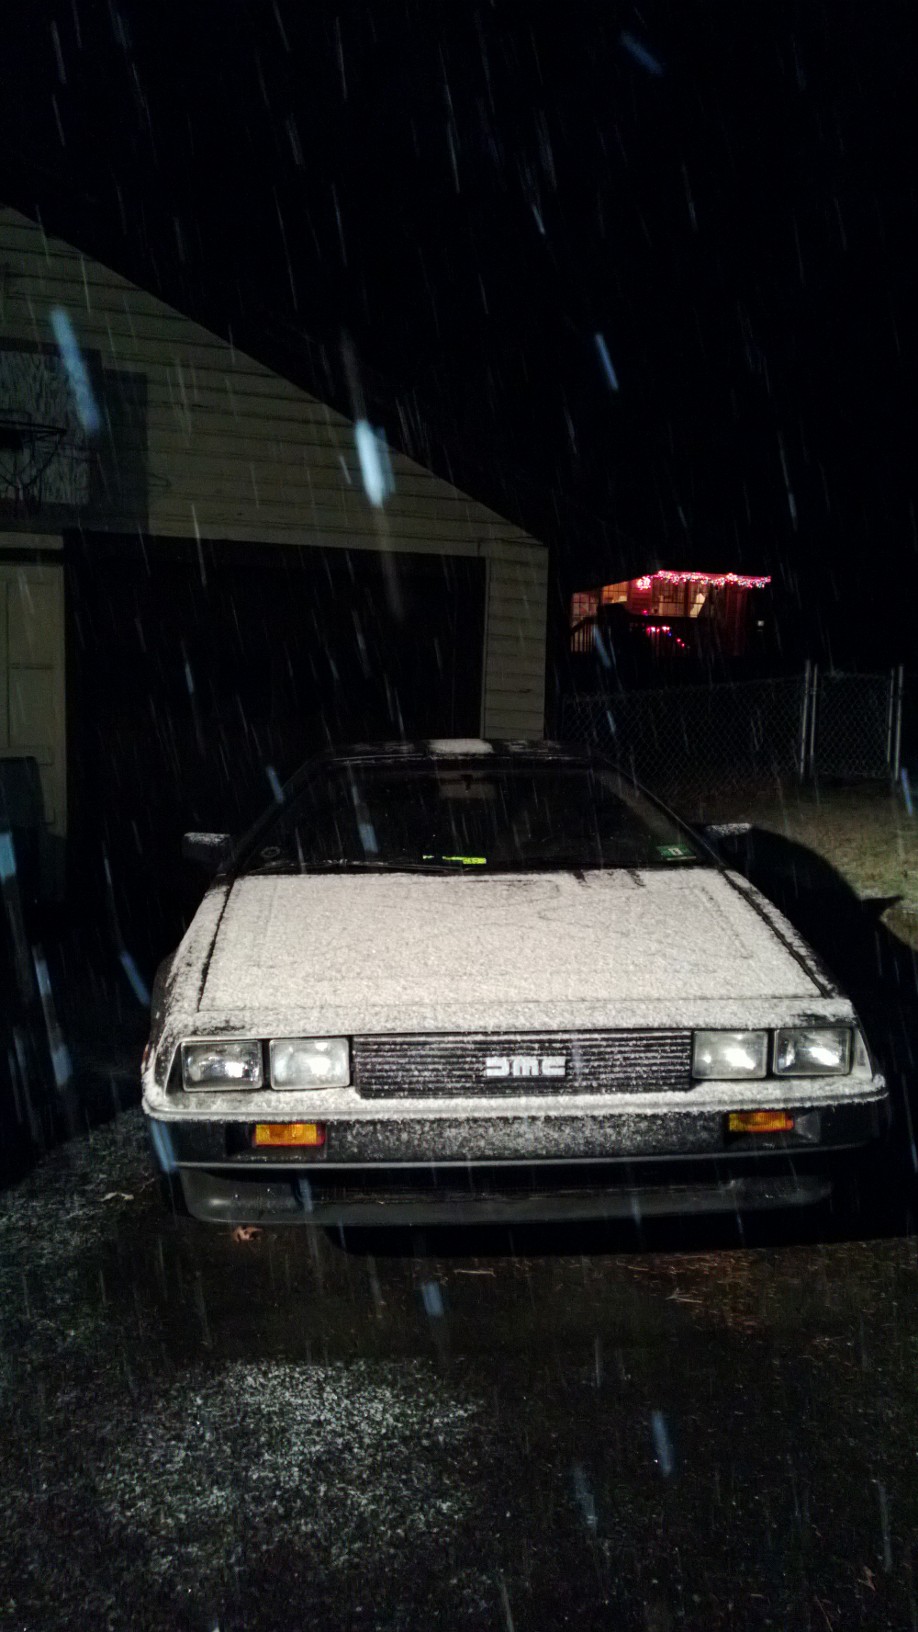 Snow Covered DeLorean